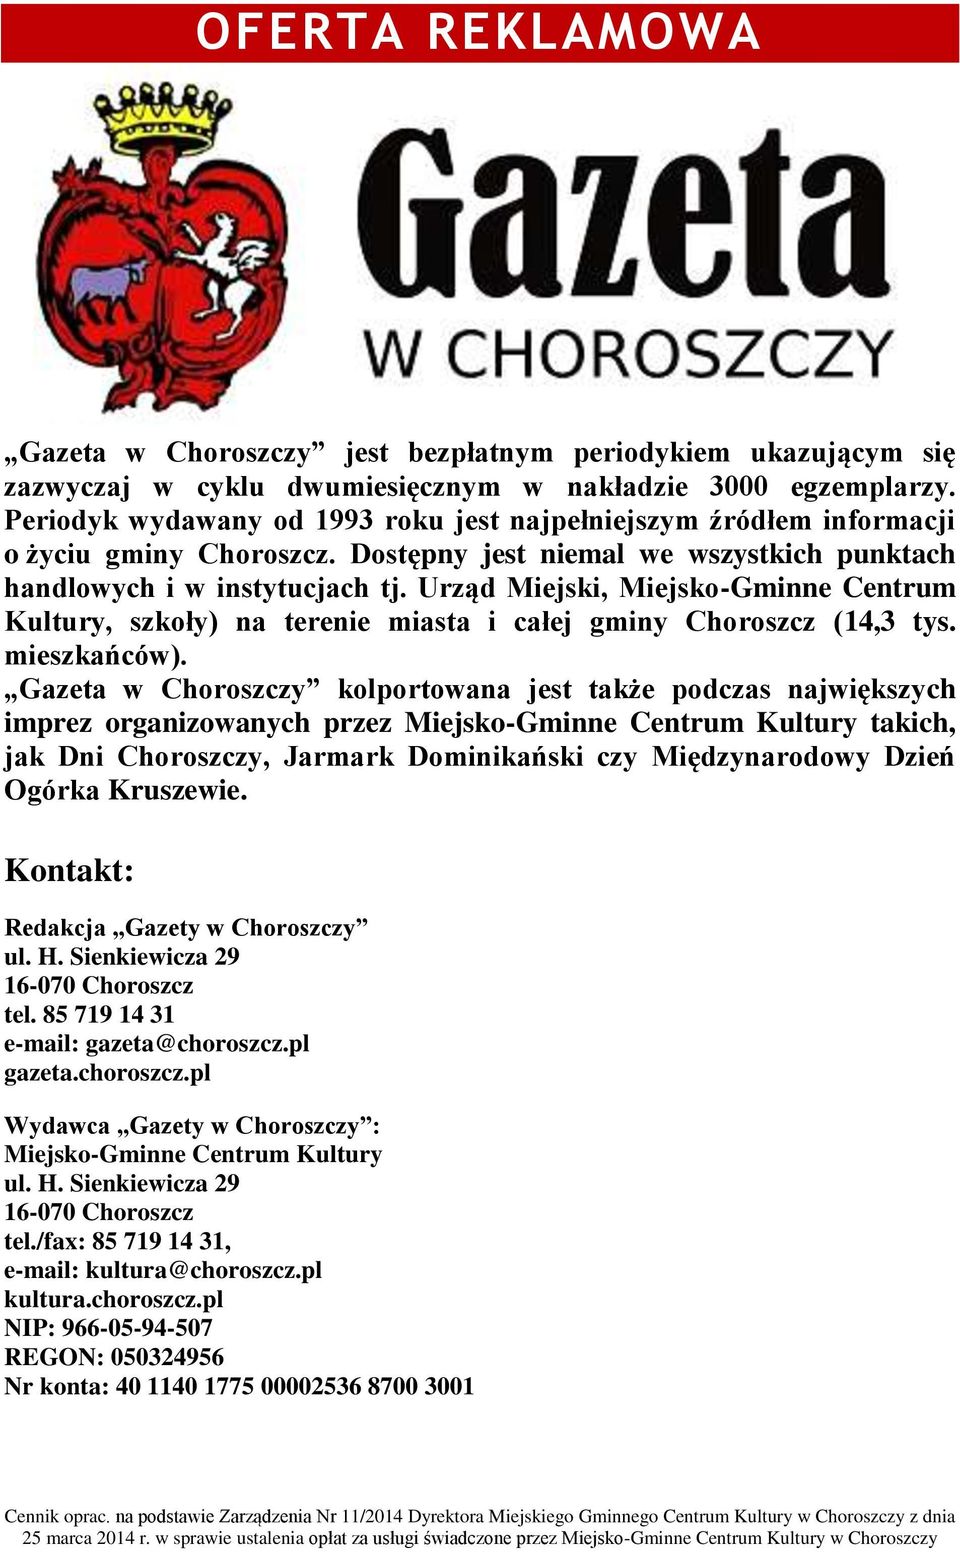 Urząd Miejski, Miejsko-Gminne Centrum Kultury, szkoły) na terenie miasta i całej gminy Choroszcz (14,3 tys. mieszkańców).